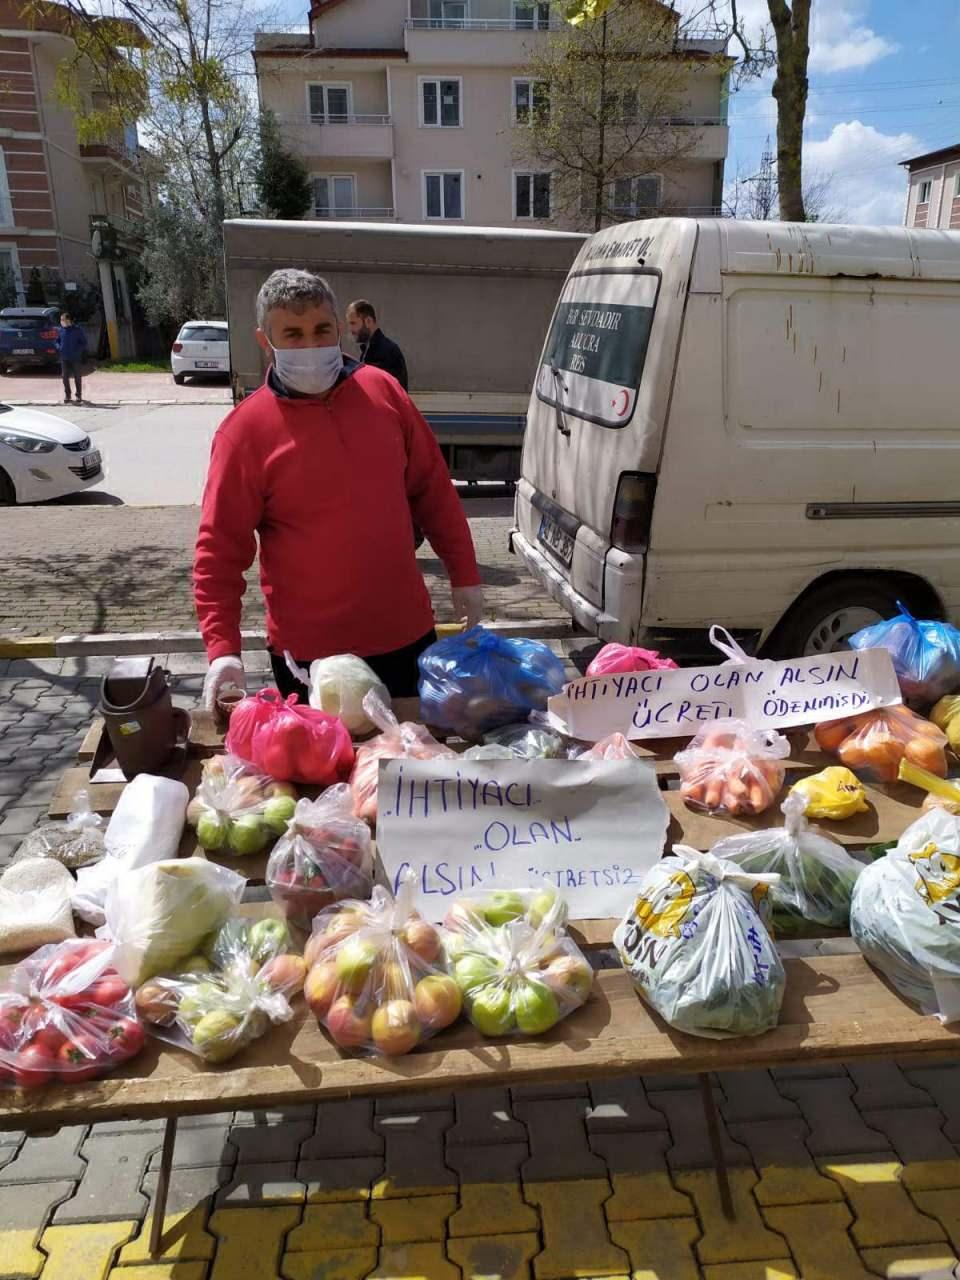 <p>Kocaeli'nin Kartepe ilçesinde, semt pazarında tezgah açan esnaf, ihtiyaç sahipleri için ücretsiz sebze ve meyve tezgahı kurdu. Tezgahtan ihtiyacı olanlar, sebze ve meyveleri aldı.</p>
